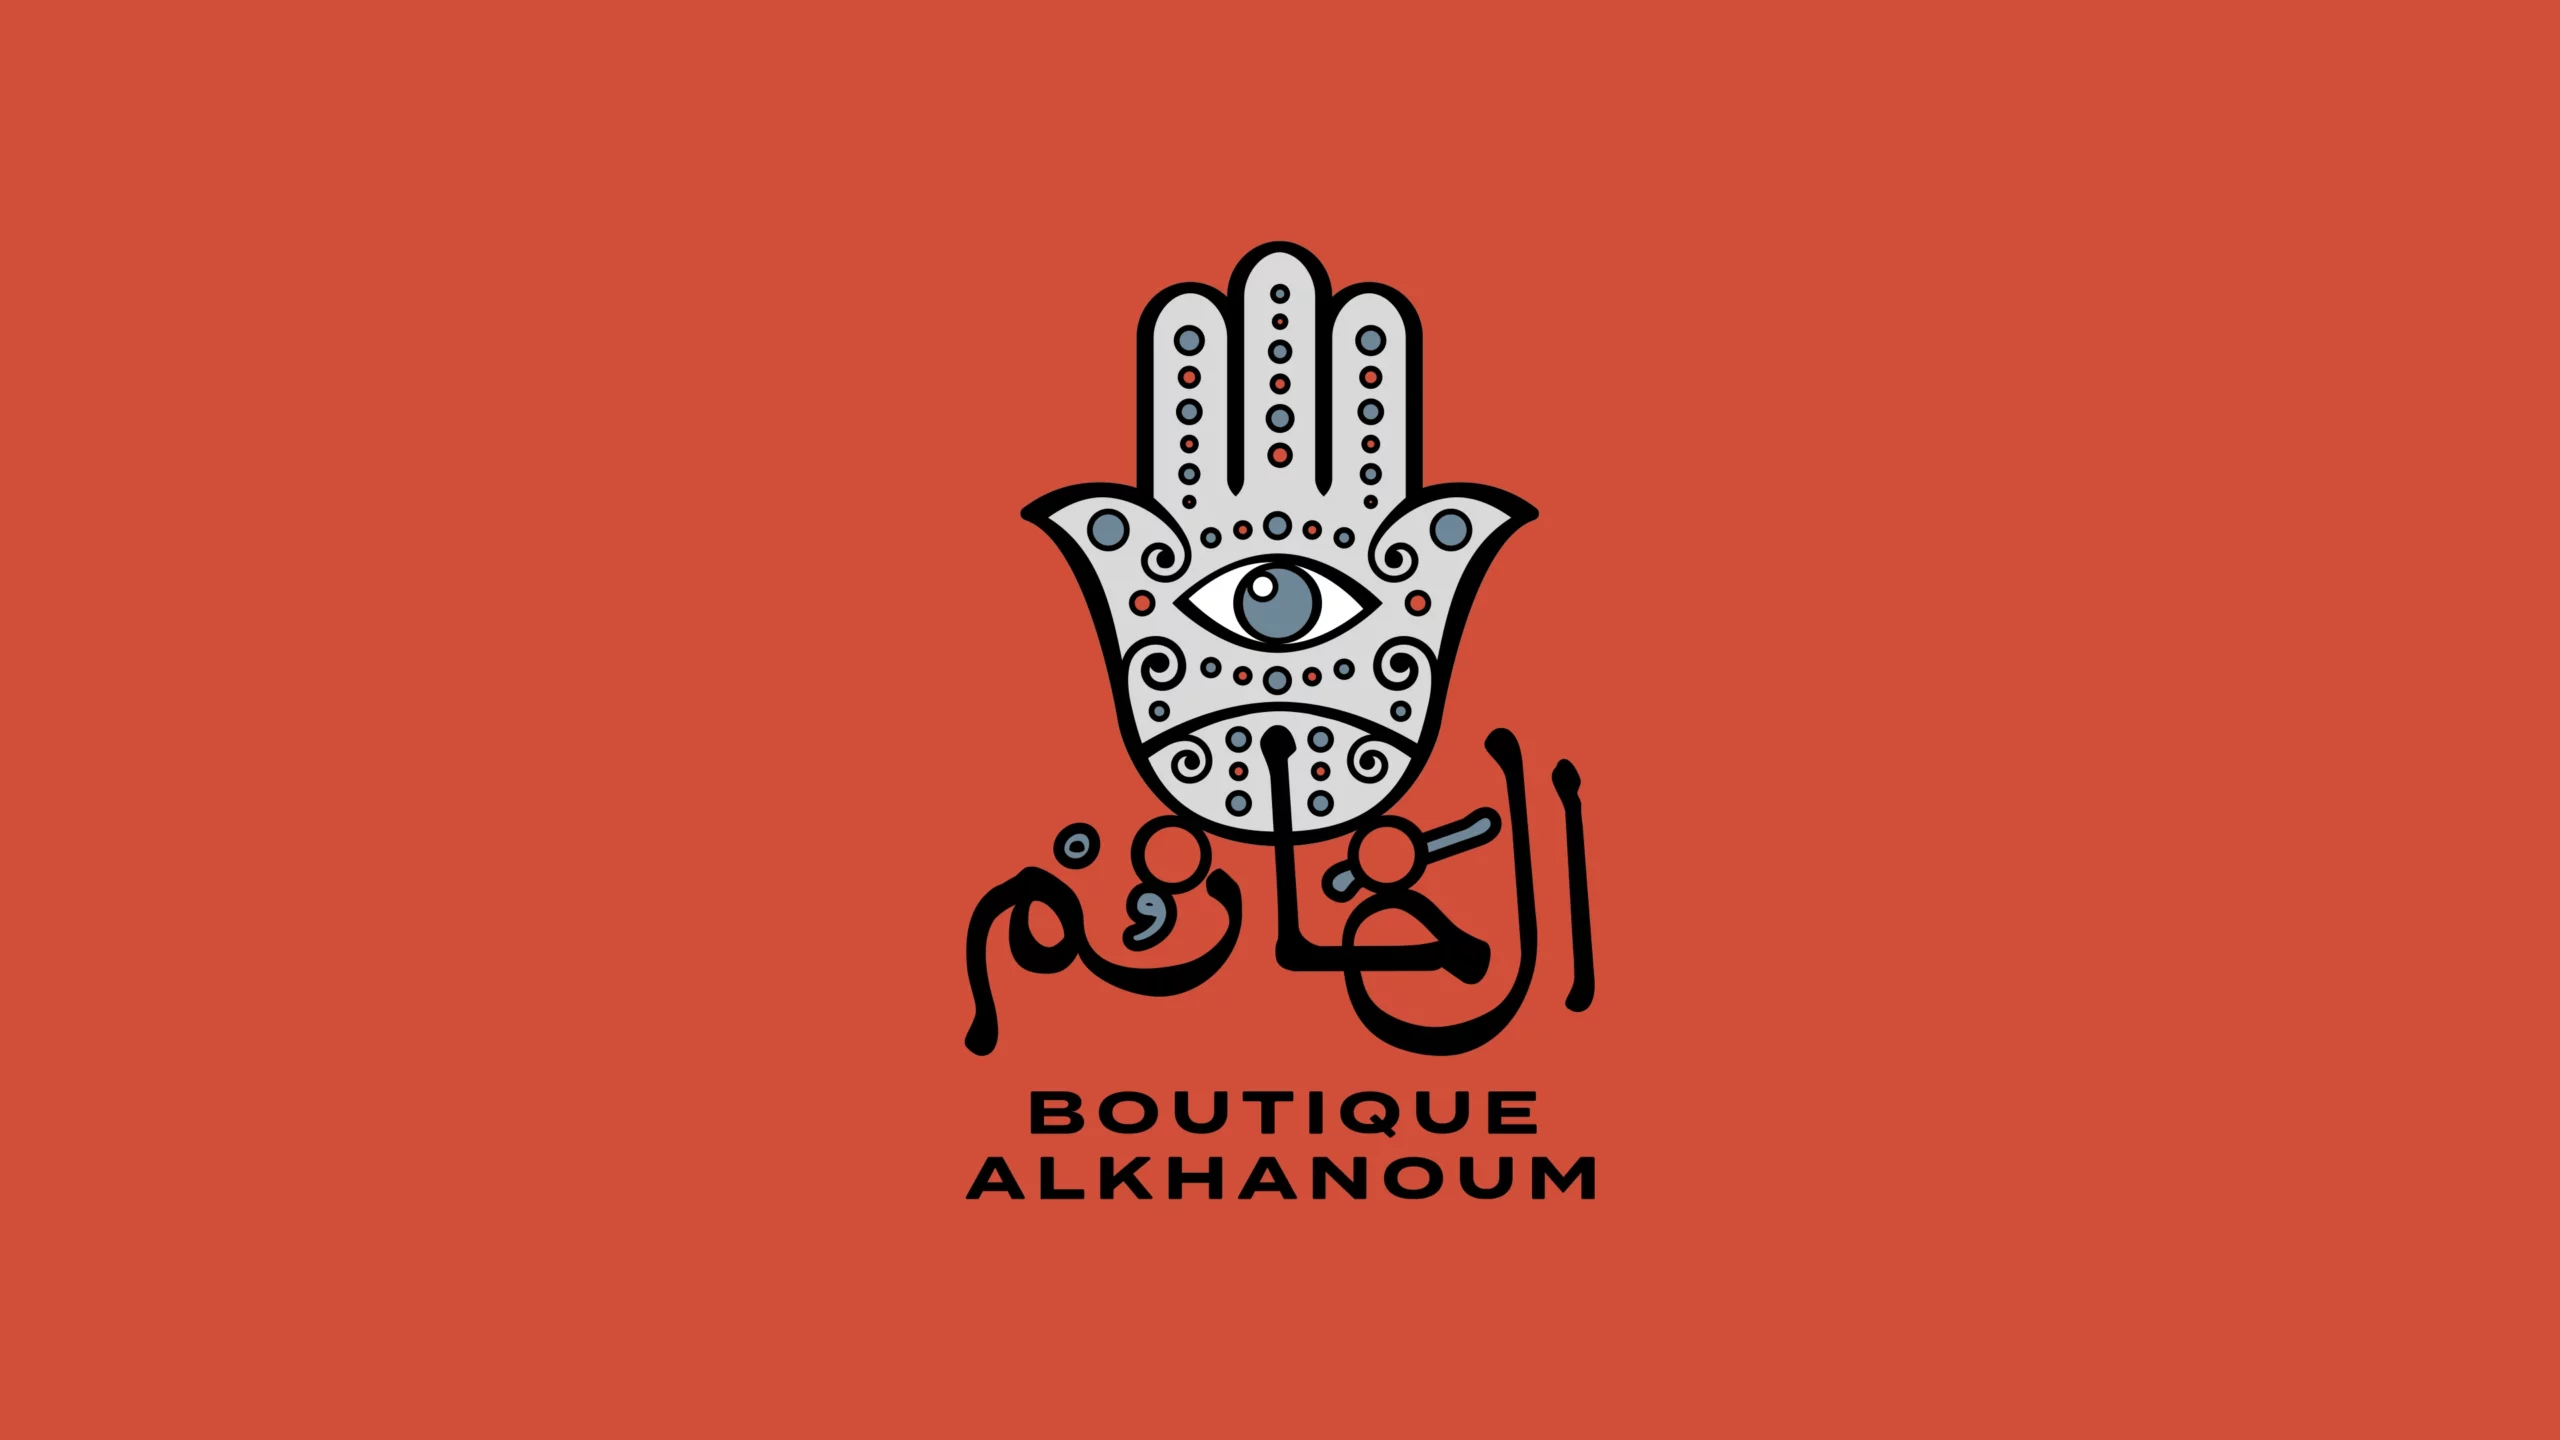 02_Boutique_AlKhanoum_By-STORM-Design-Studio